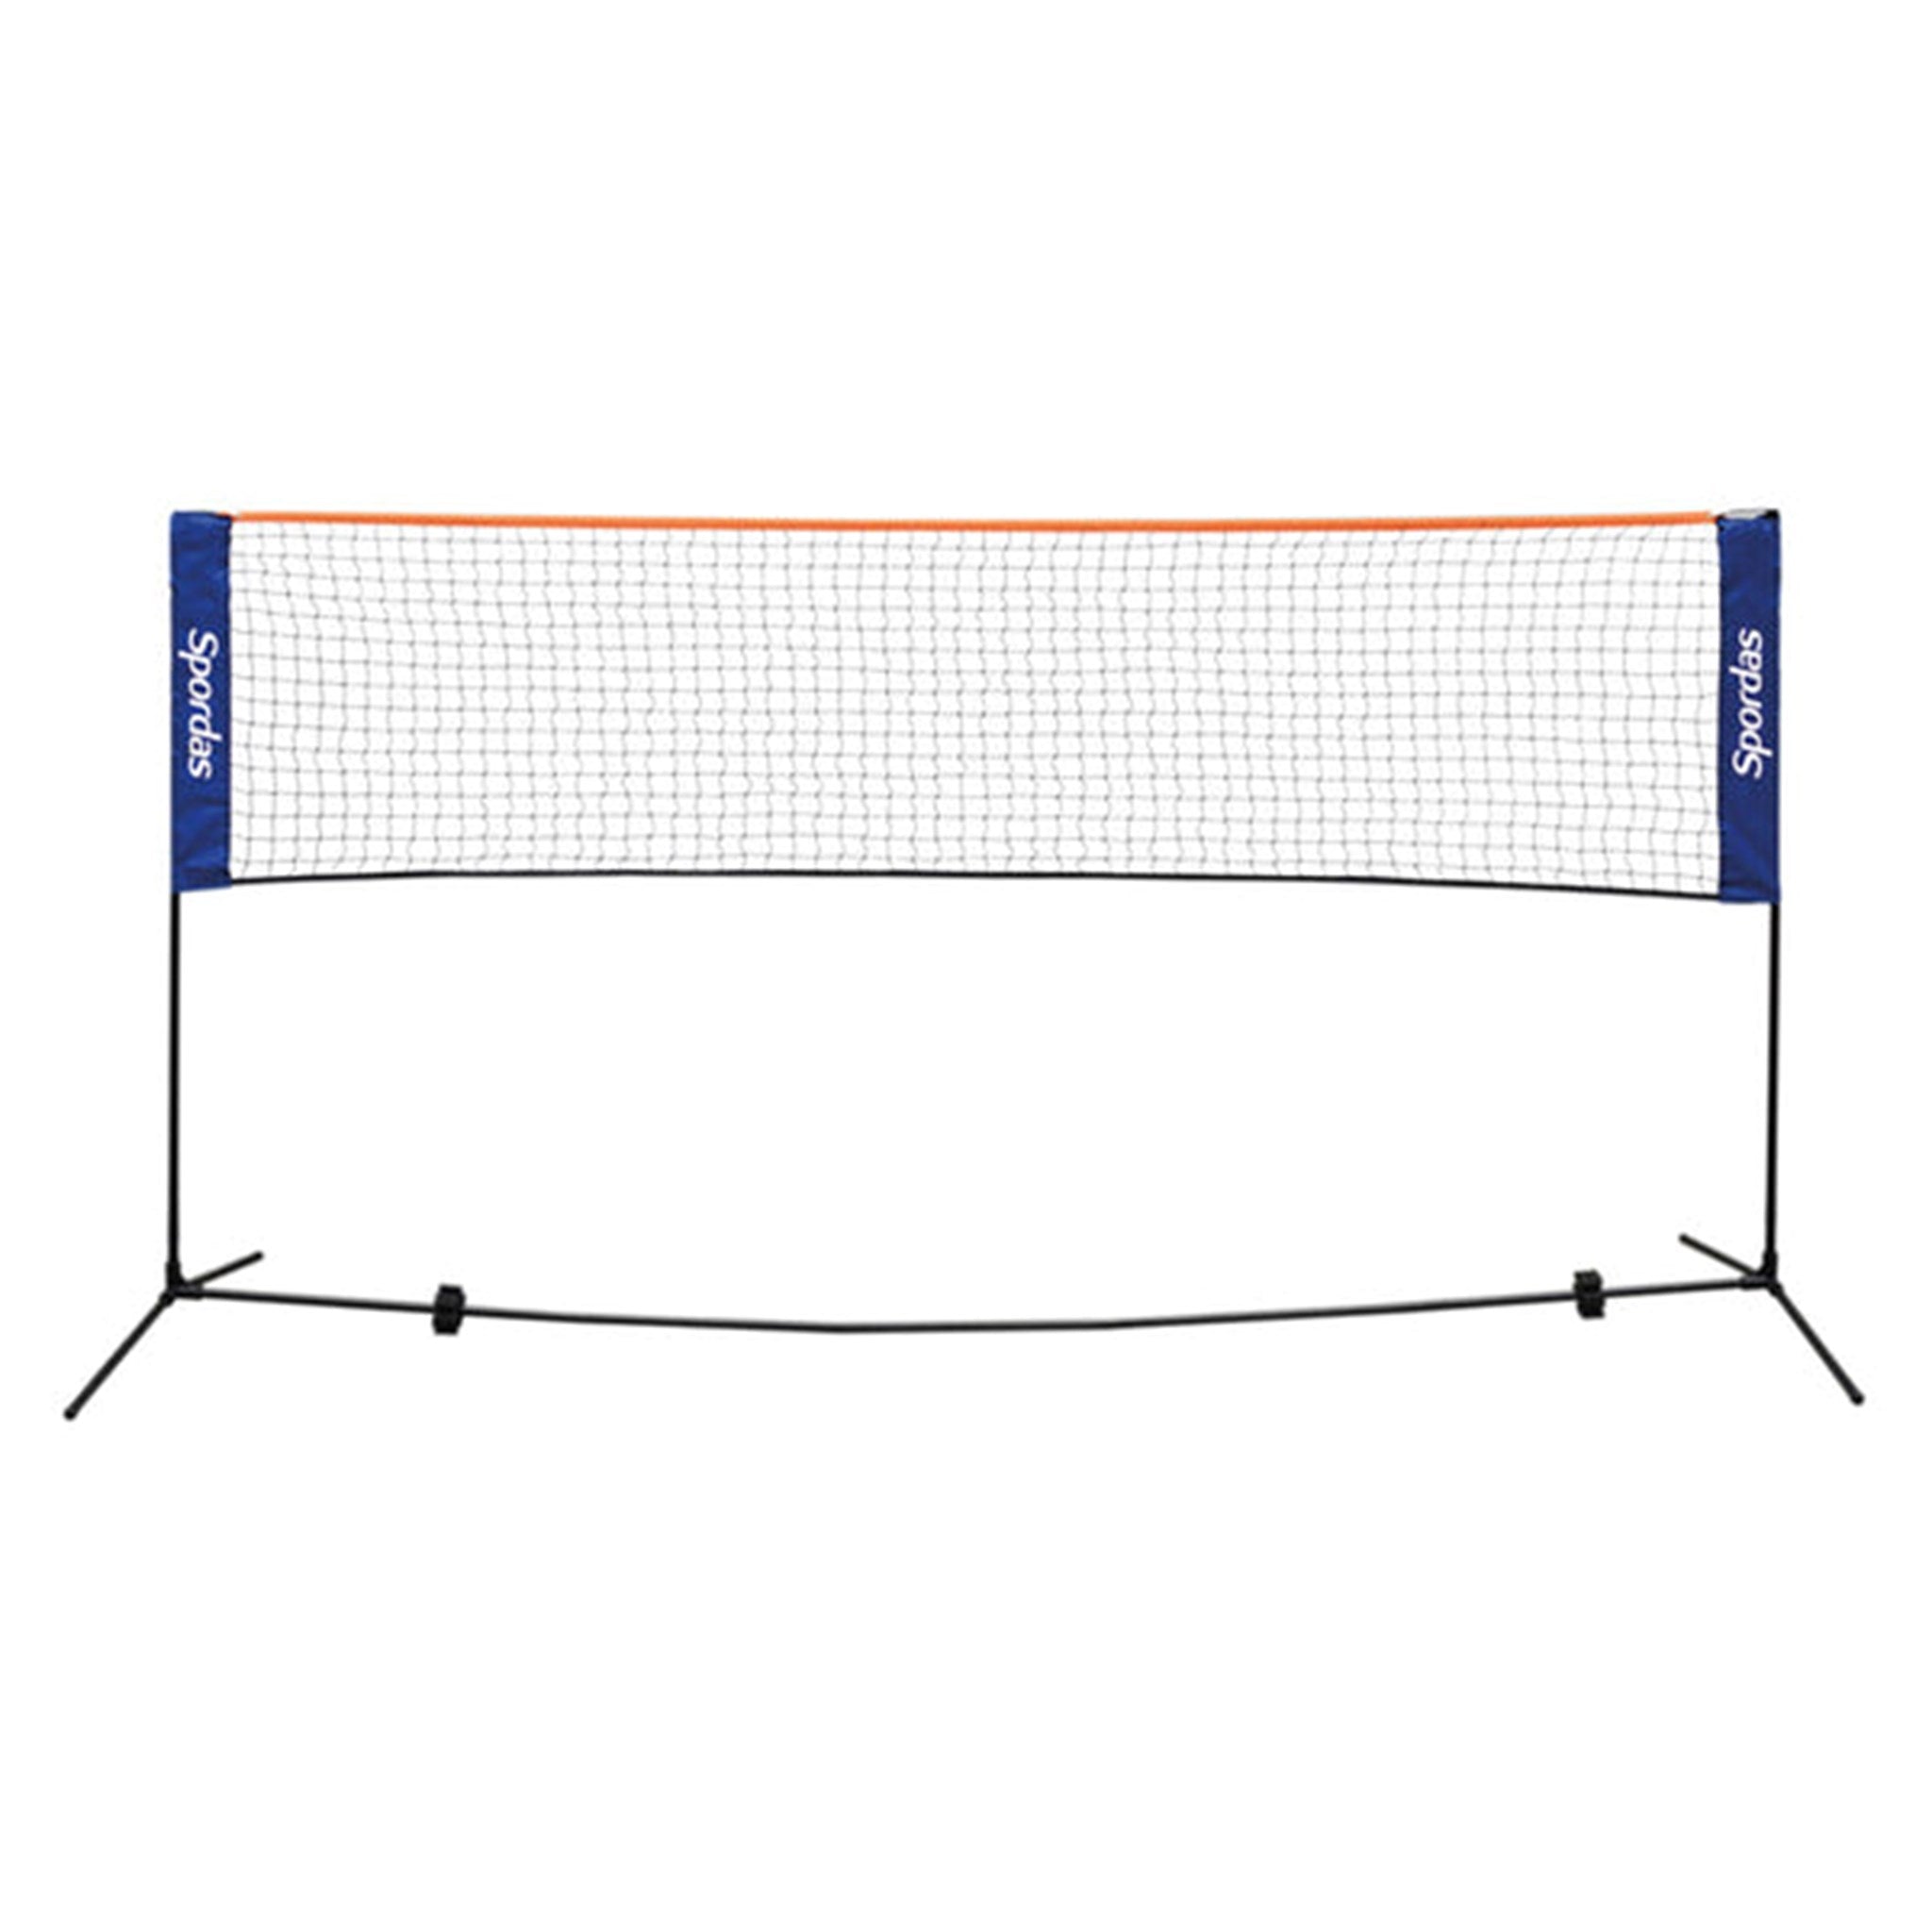 M561430-Spordas-Transportabelt-net-til-badminton-og-mini-tennis_01_grande.jpg